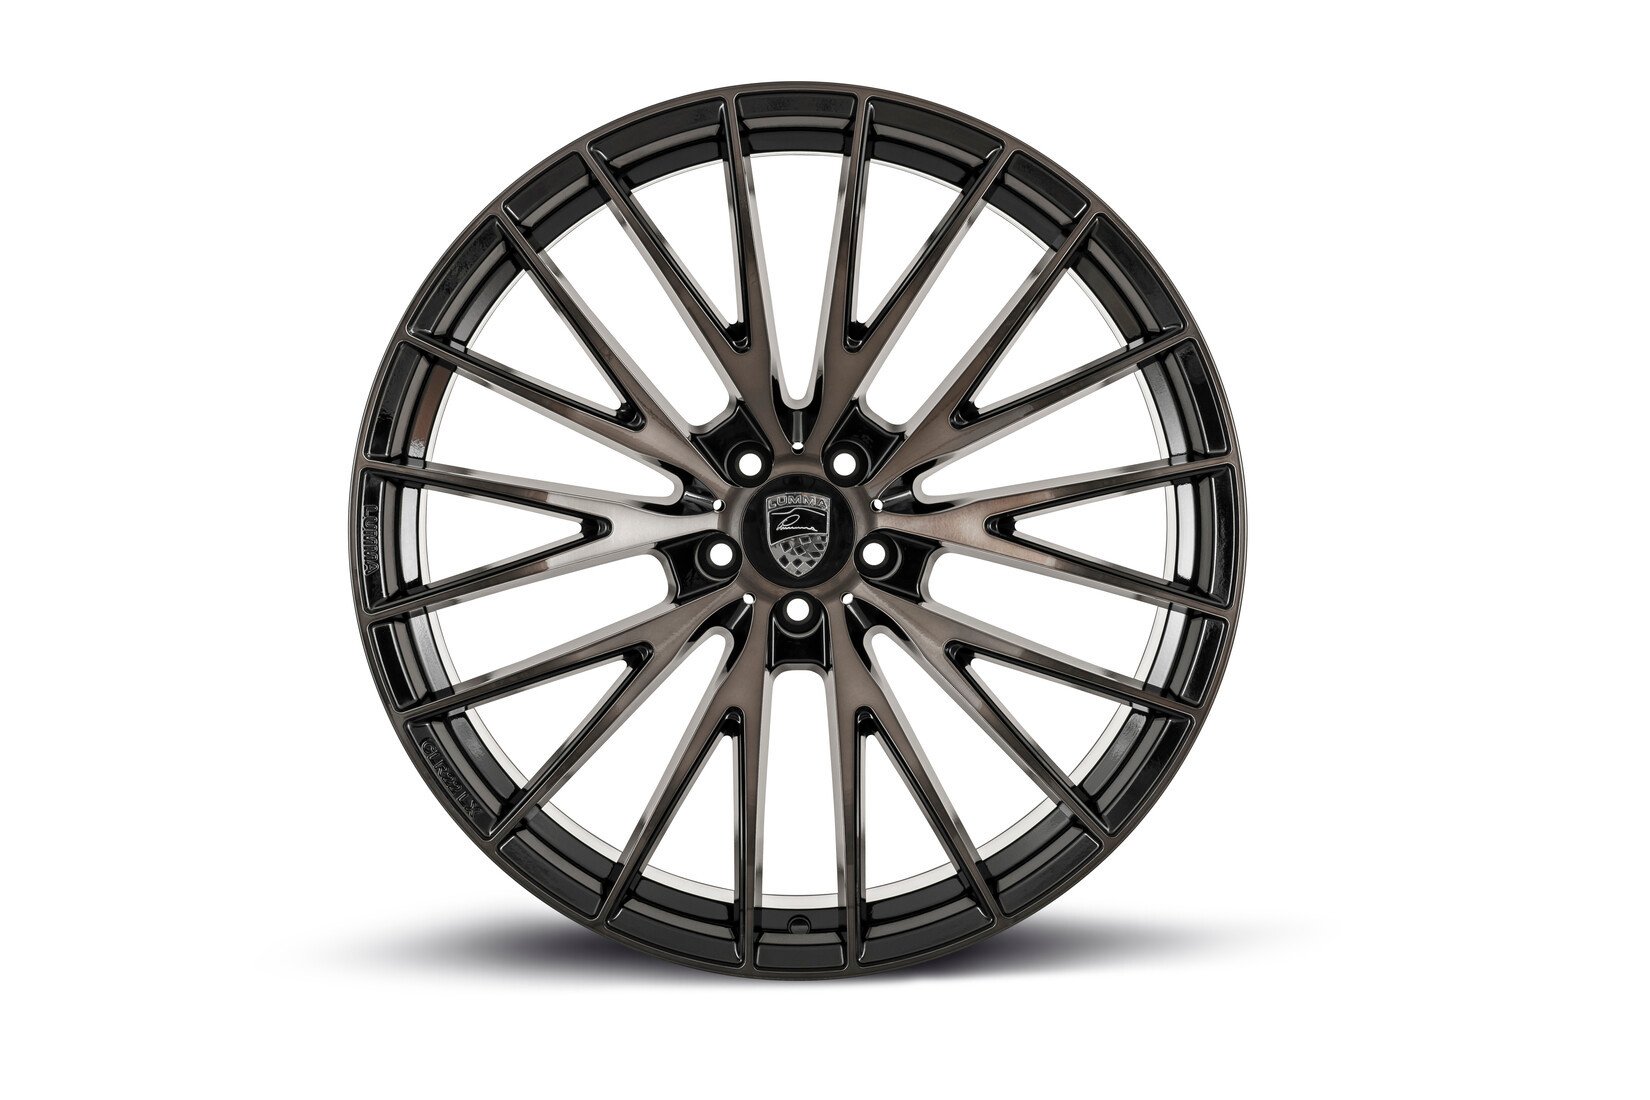 LUMMA CLR 22 LX NEW MODEL 2019 Forged Wheels